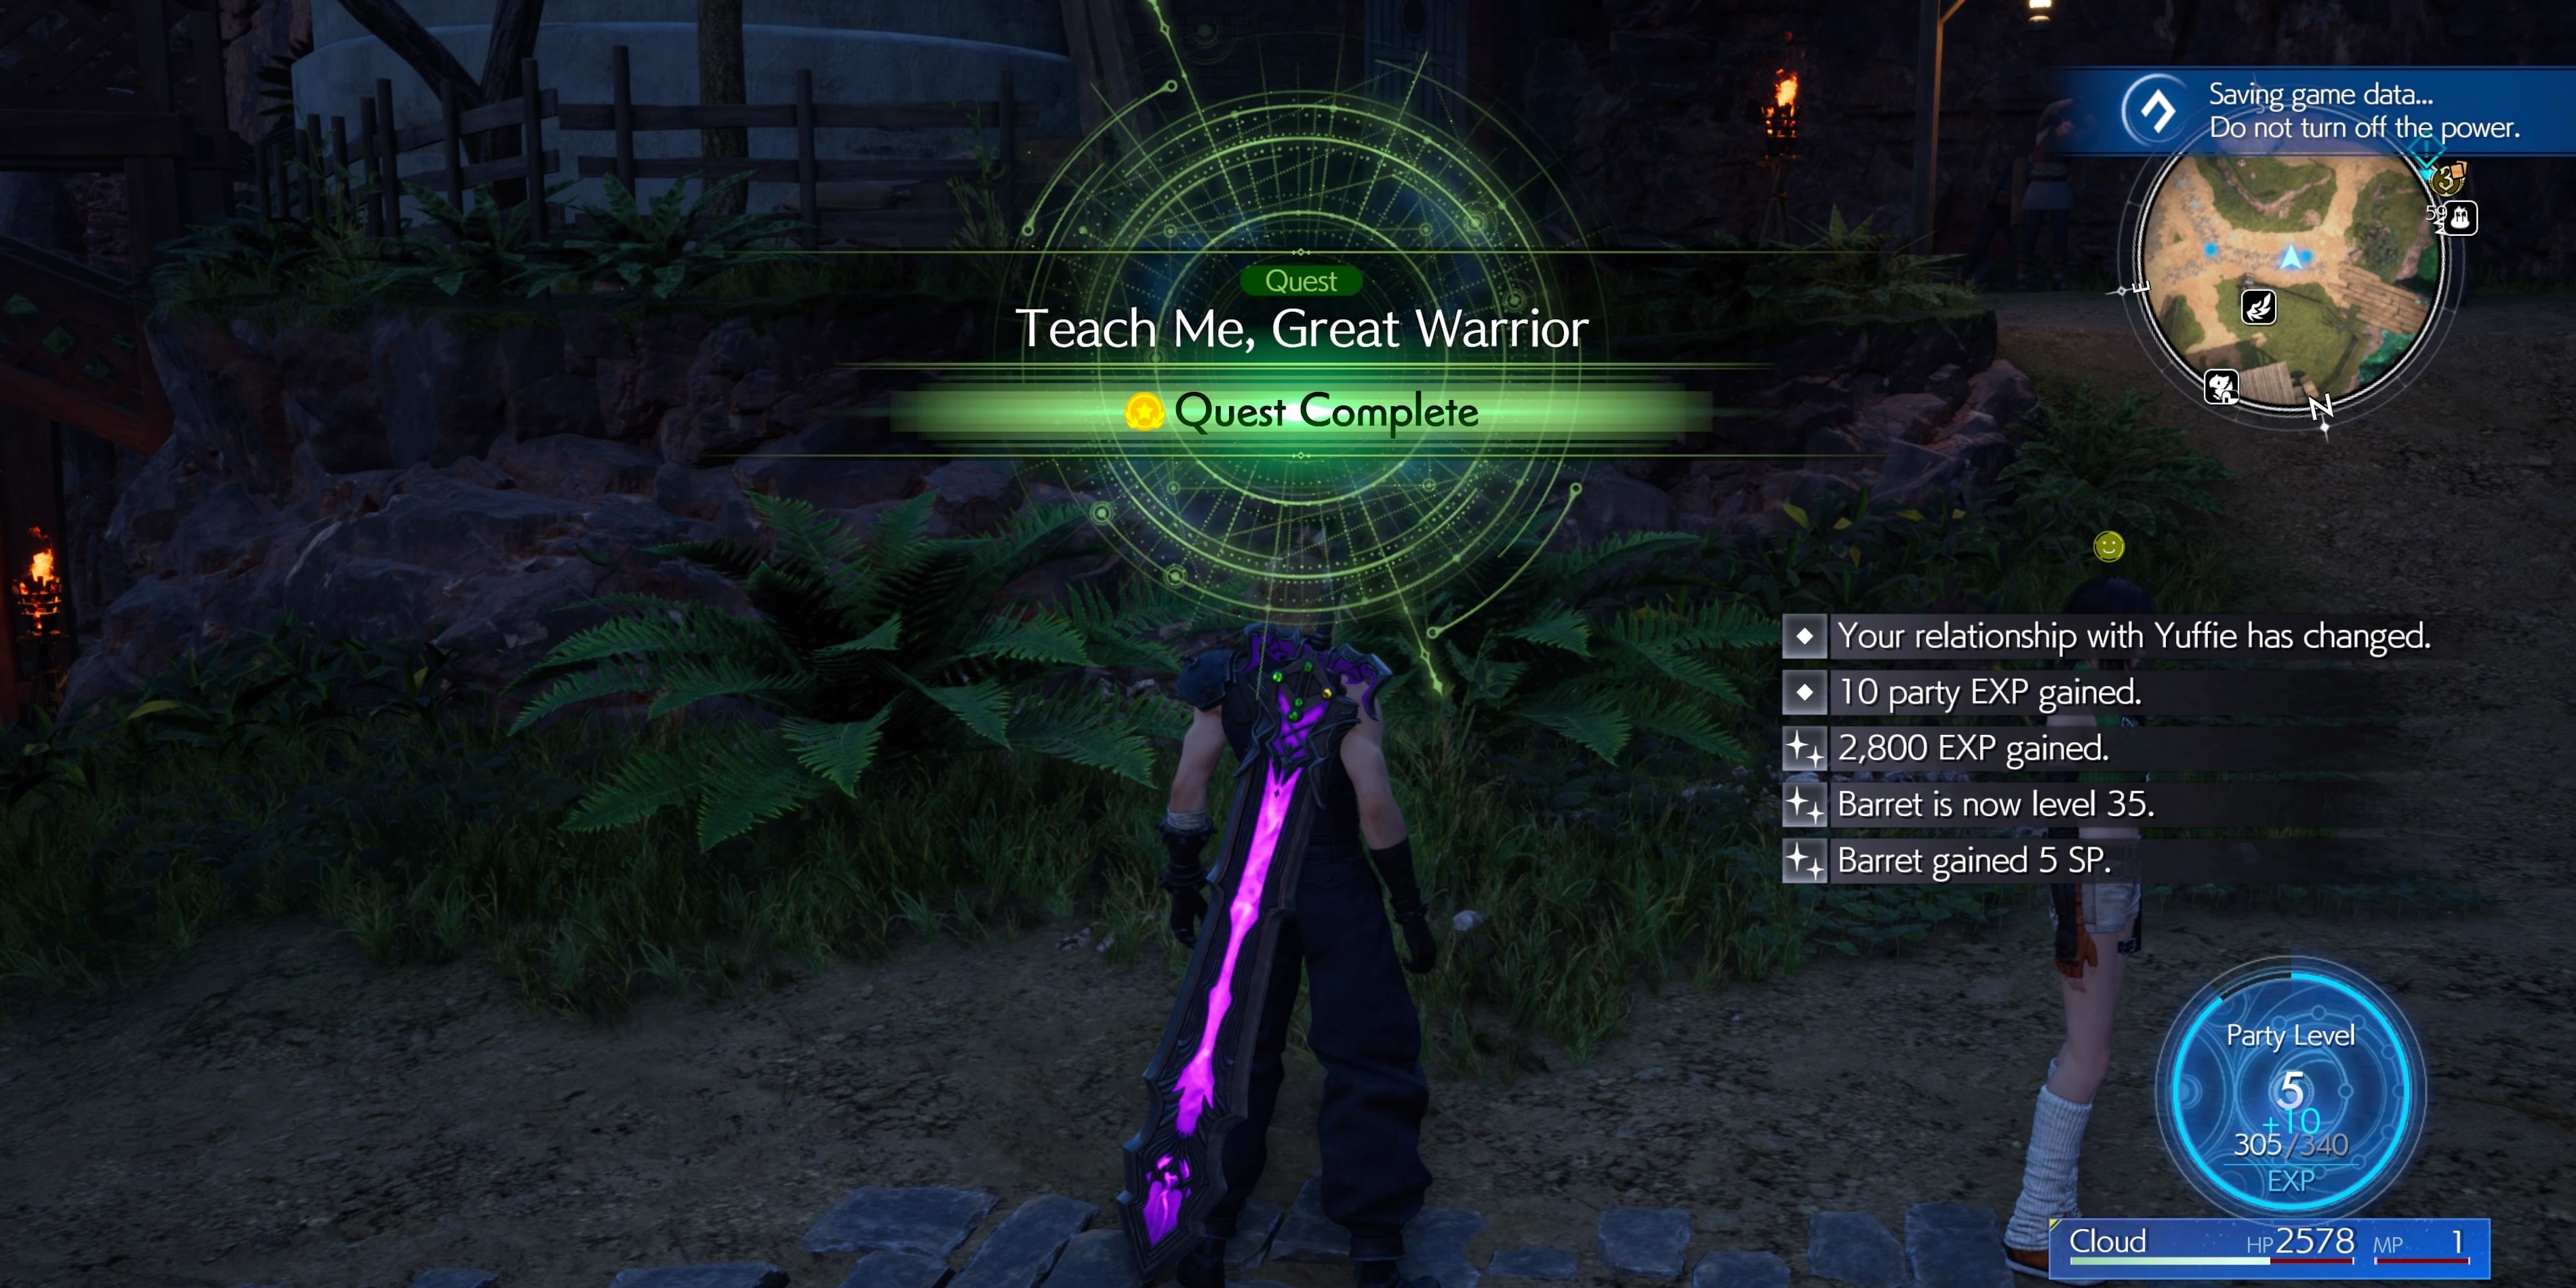 Final Fantasy 7 Rebirth: Teach Me, Great Warrior Rewards